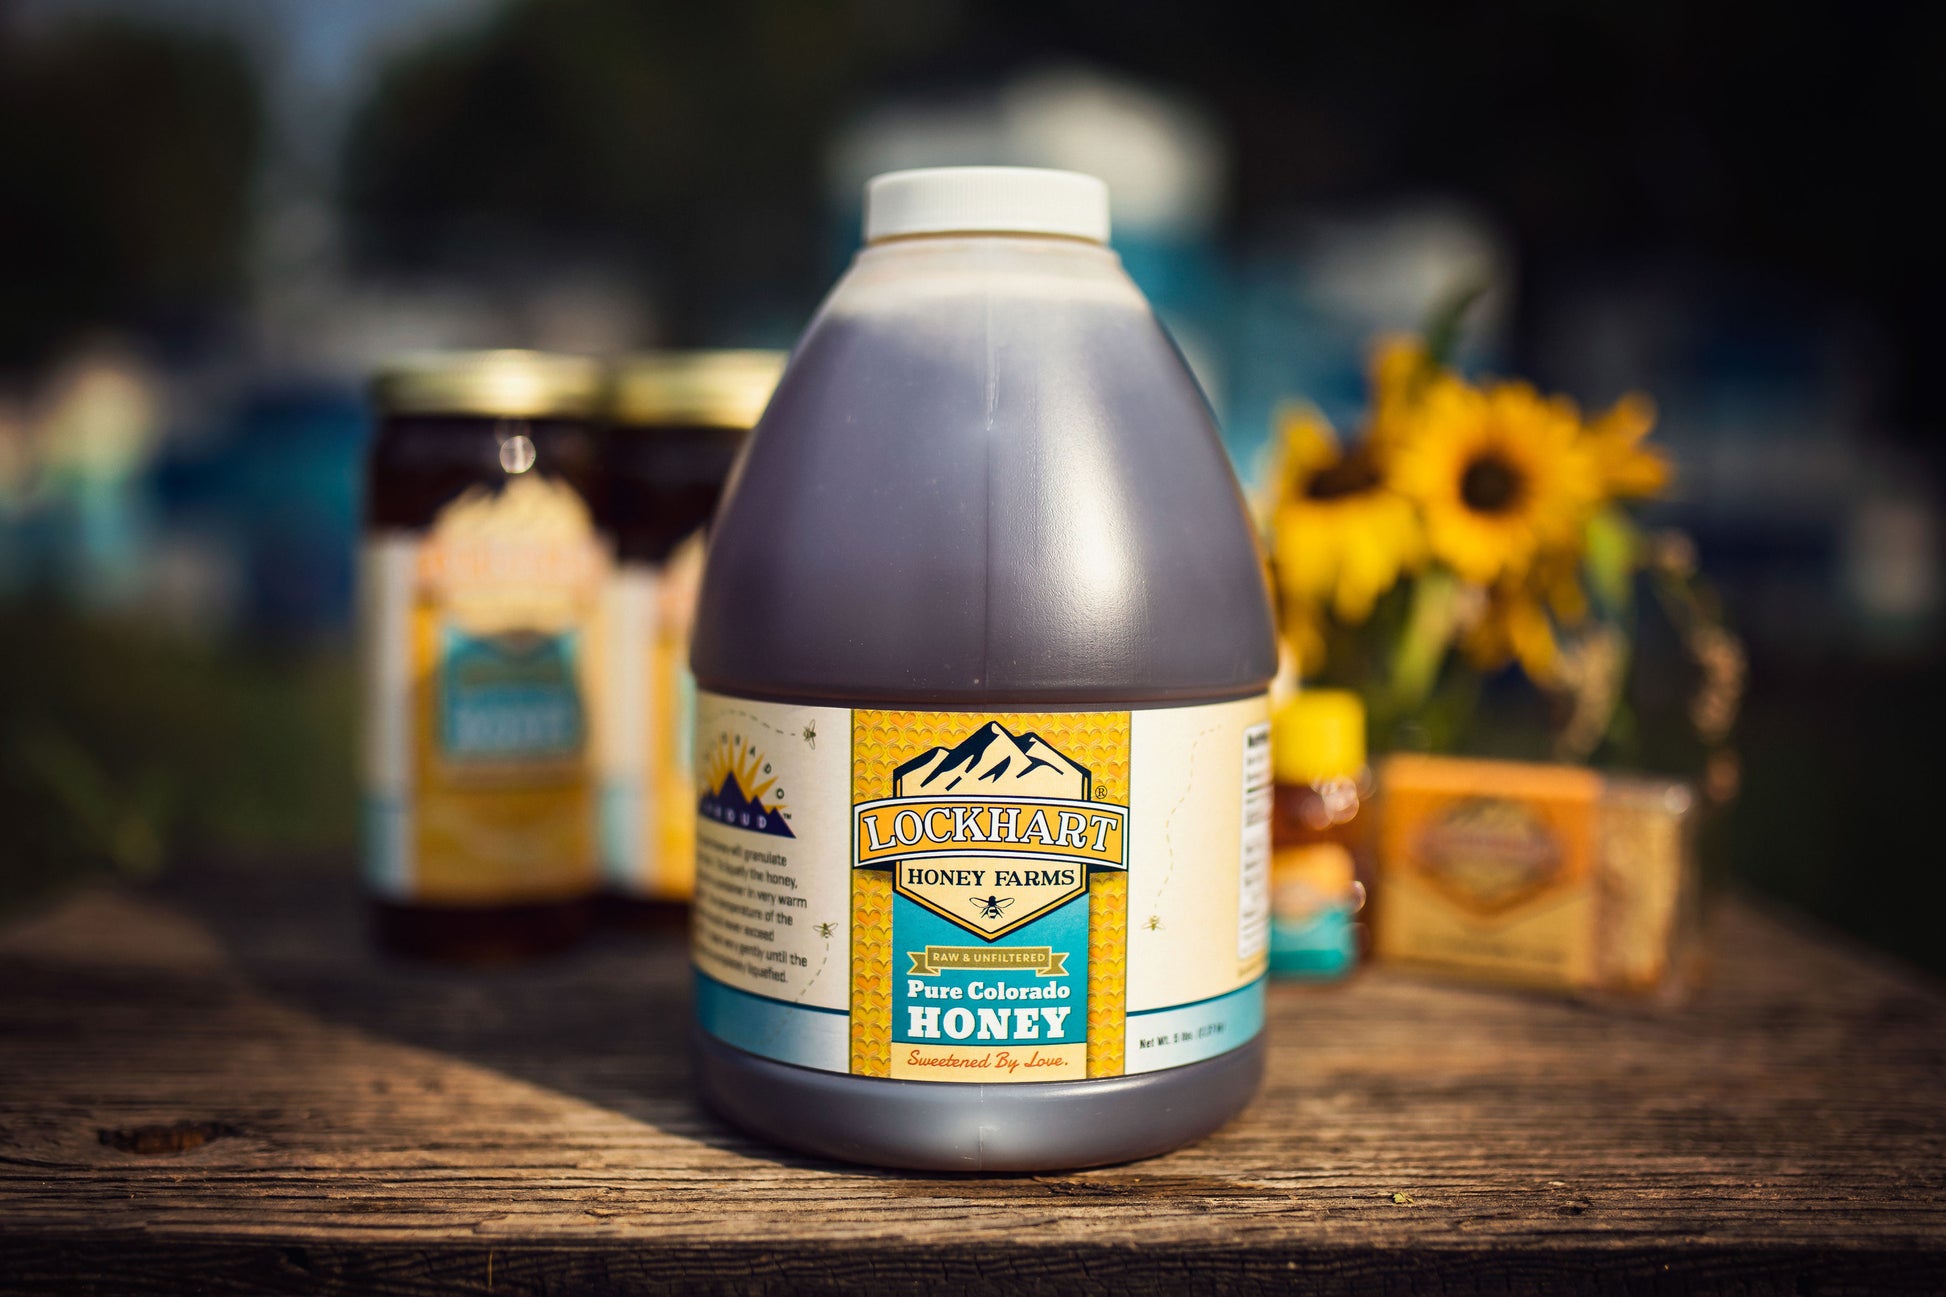 5 lb honey jug - pure Colorado honey from Lockhart Honey Farms